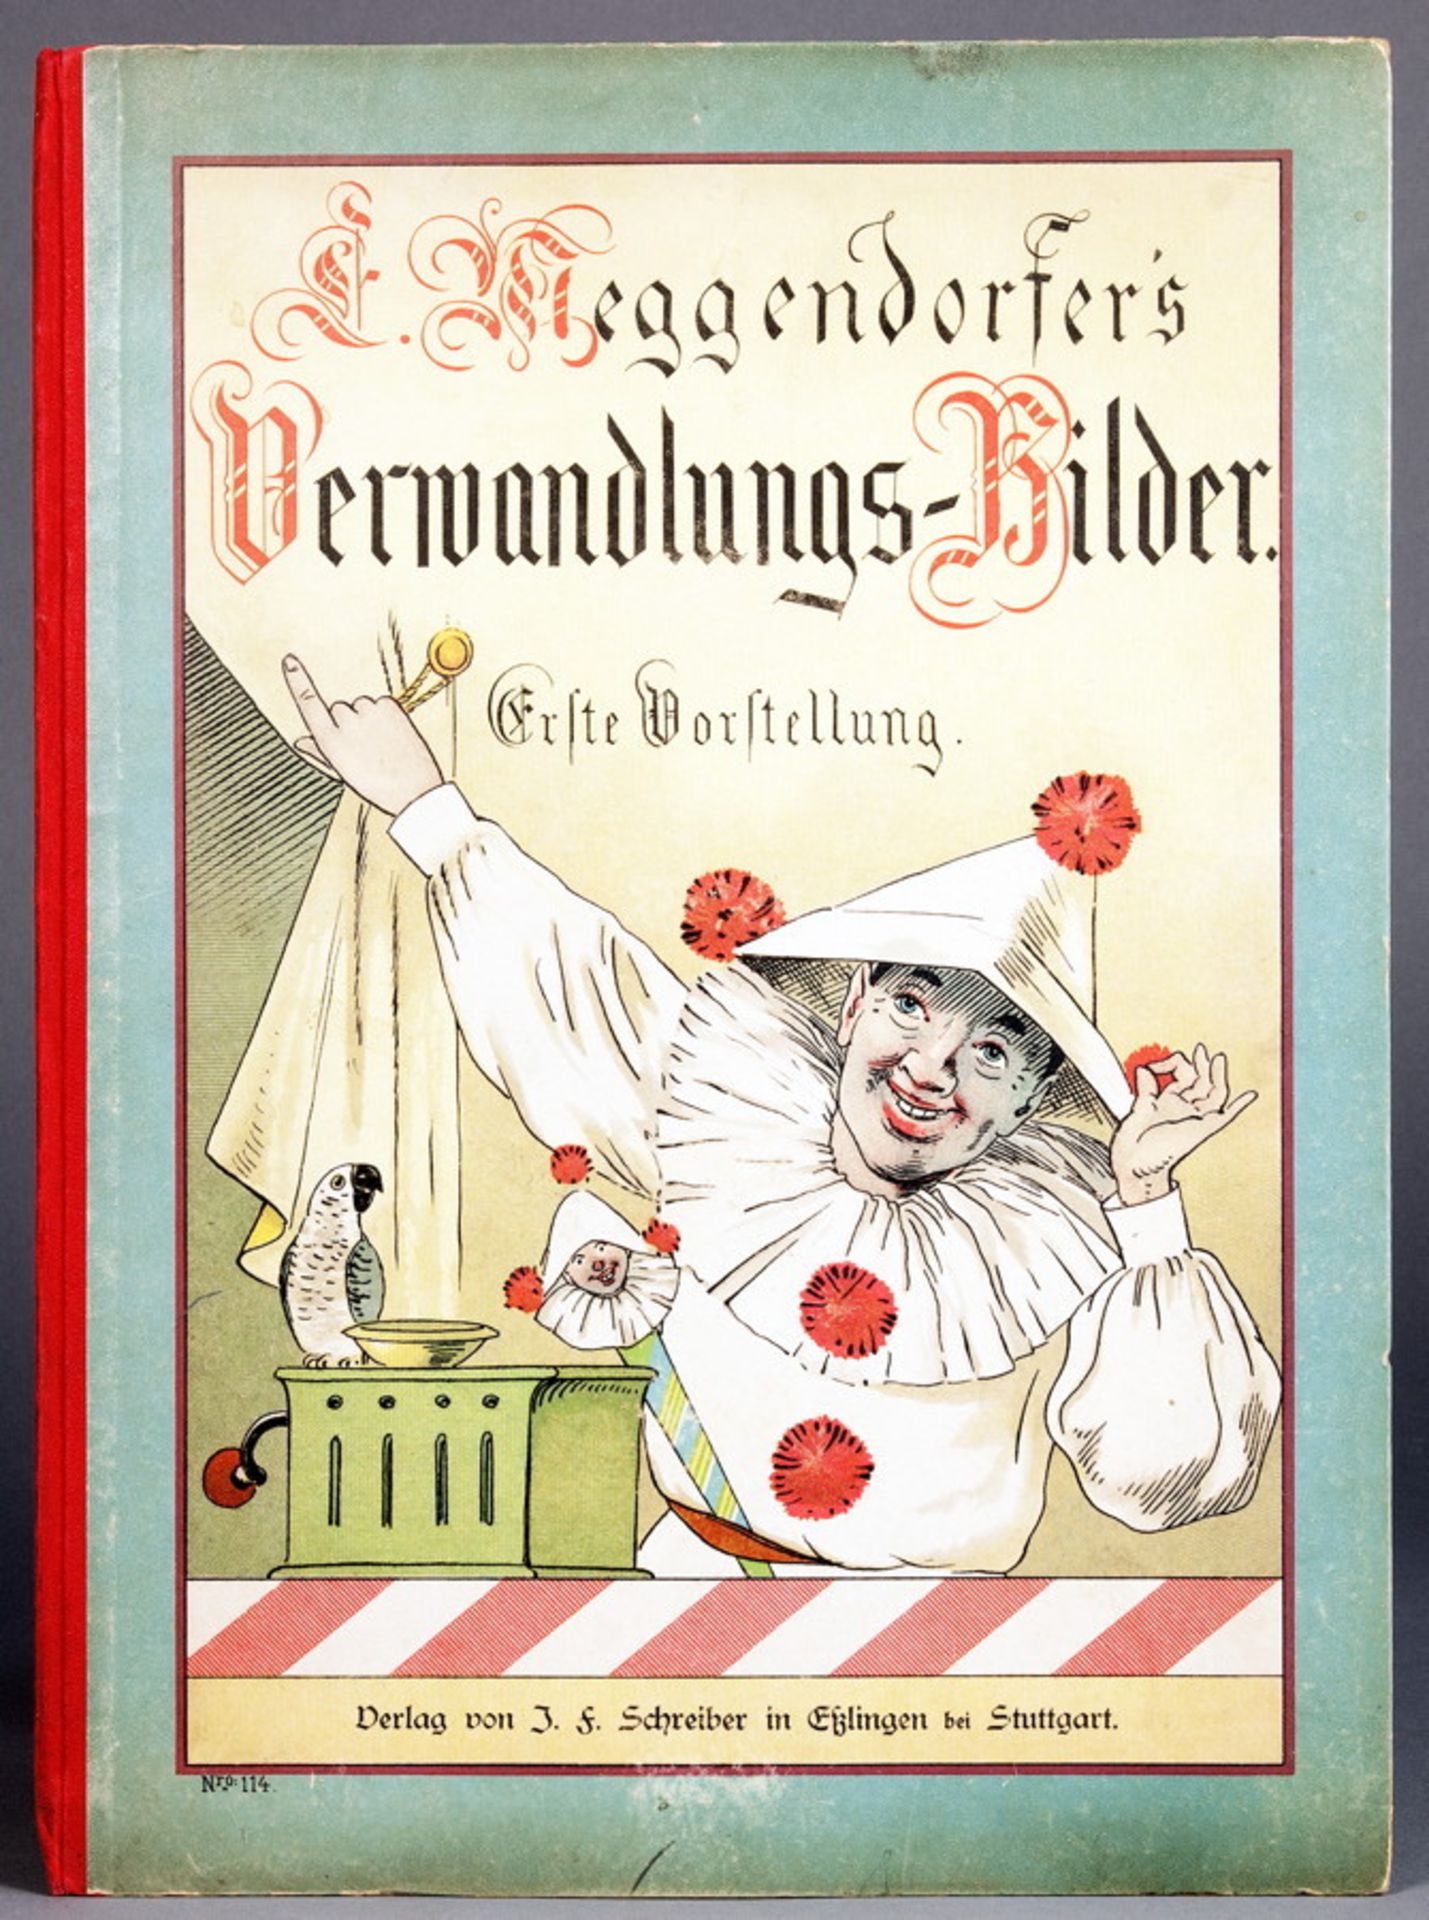 Lothar Meggendorfer. Verwandlungs-Bilder. Erste Vorstellung. Esslingen, J. F. Schreiber [1894] . Mit - Image 5 of 5